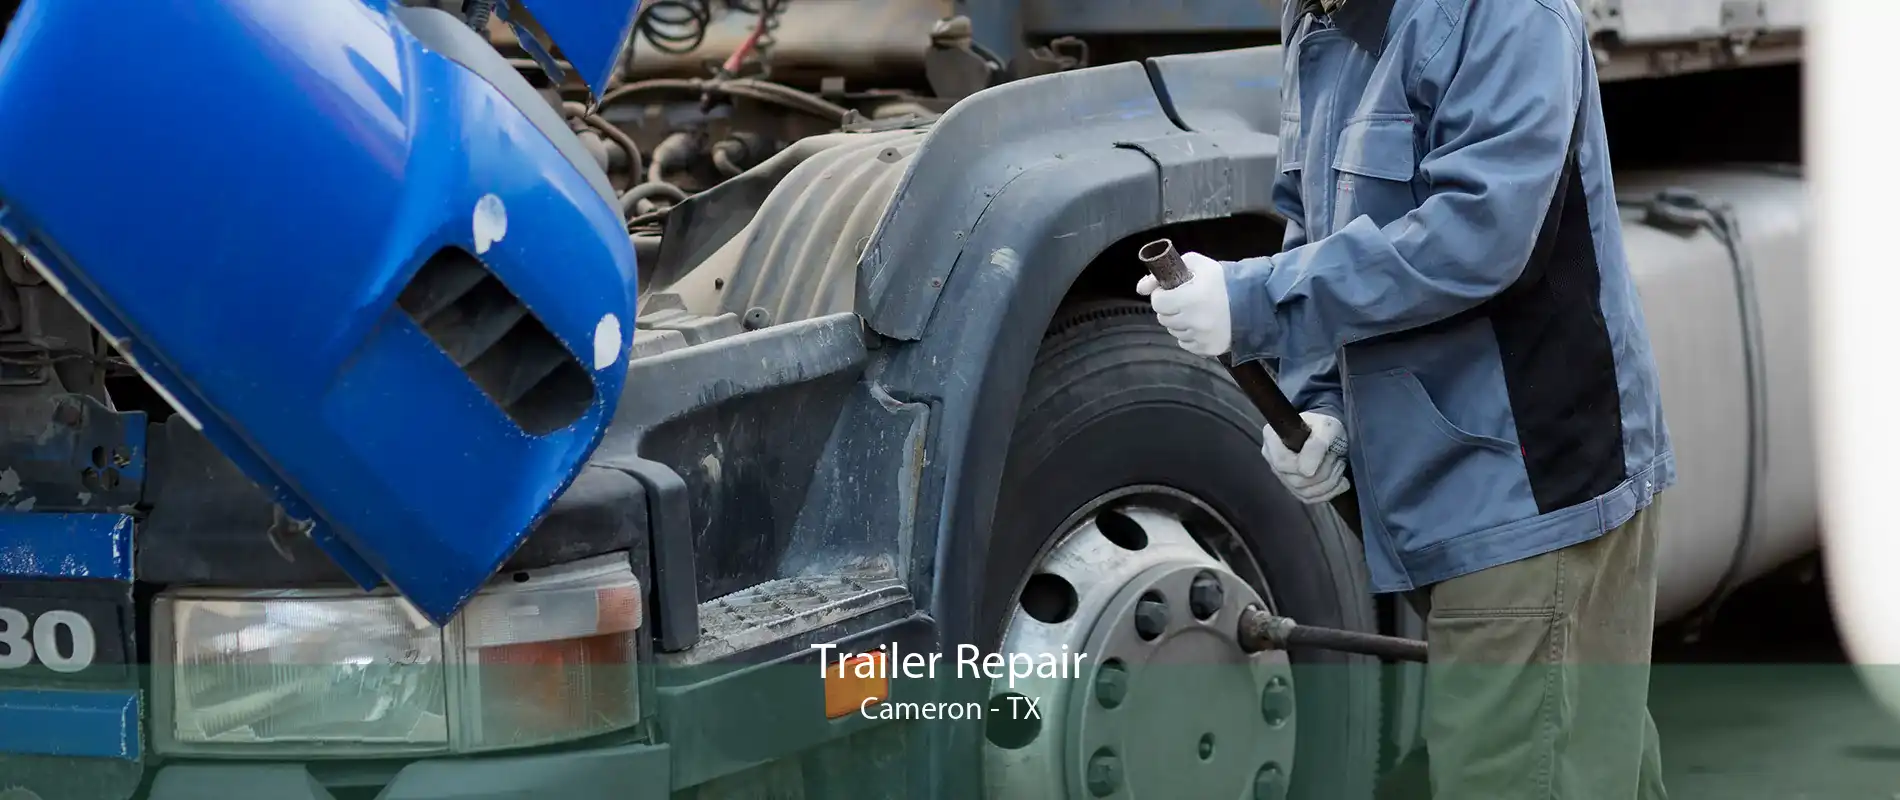 Trailer Repair Cameron - TX